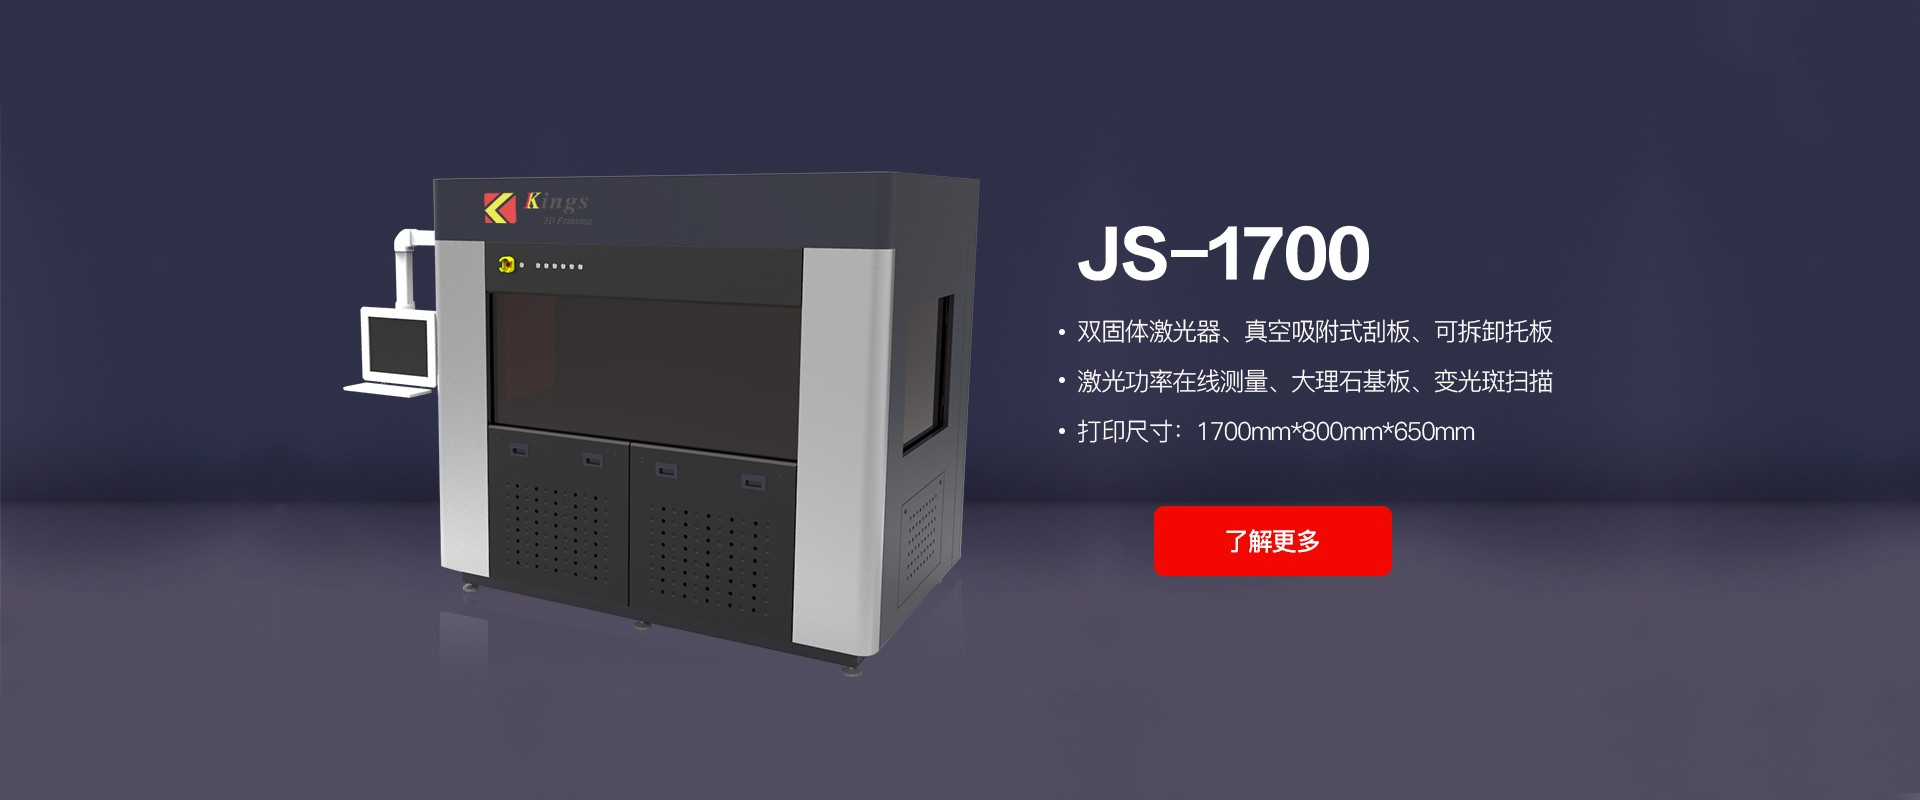 JS-1700